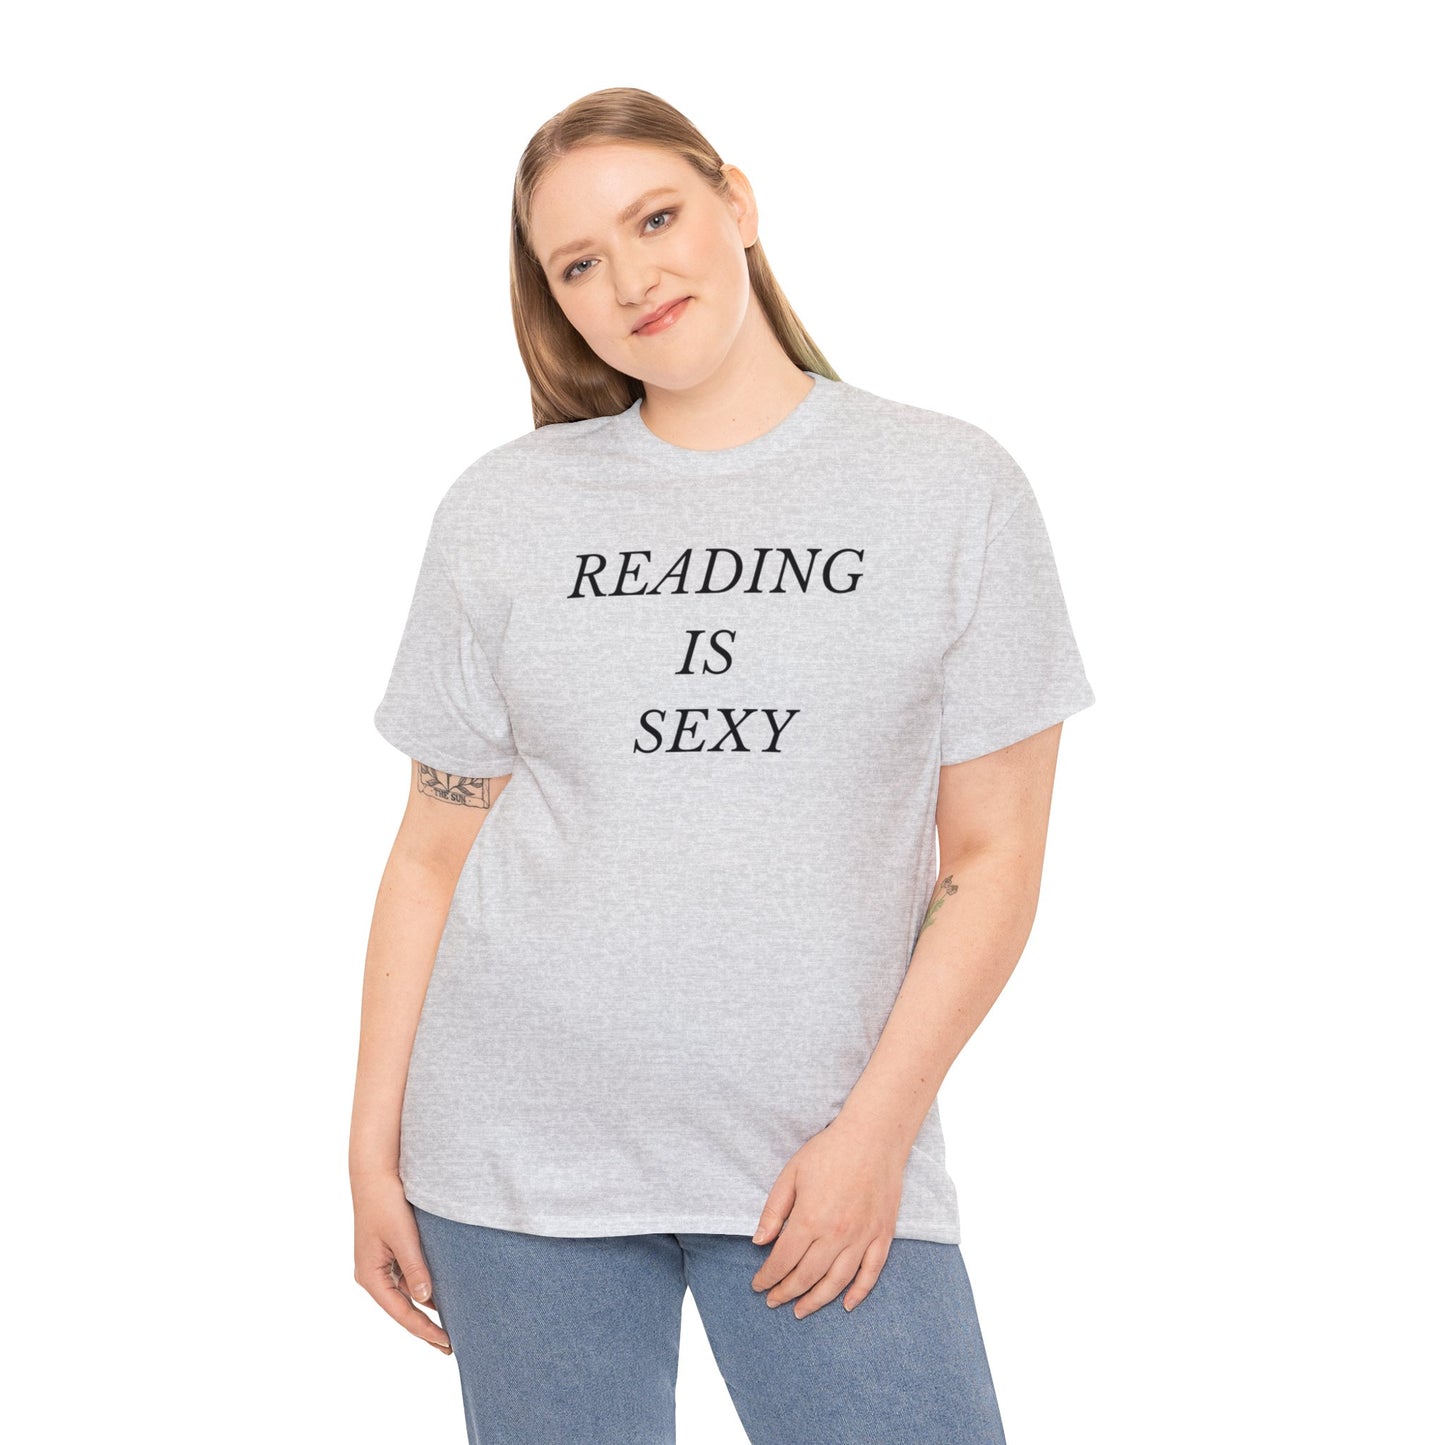 READING IS SEXY Unisex Tee